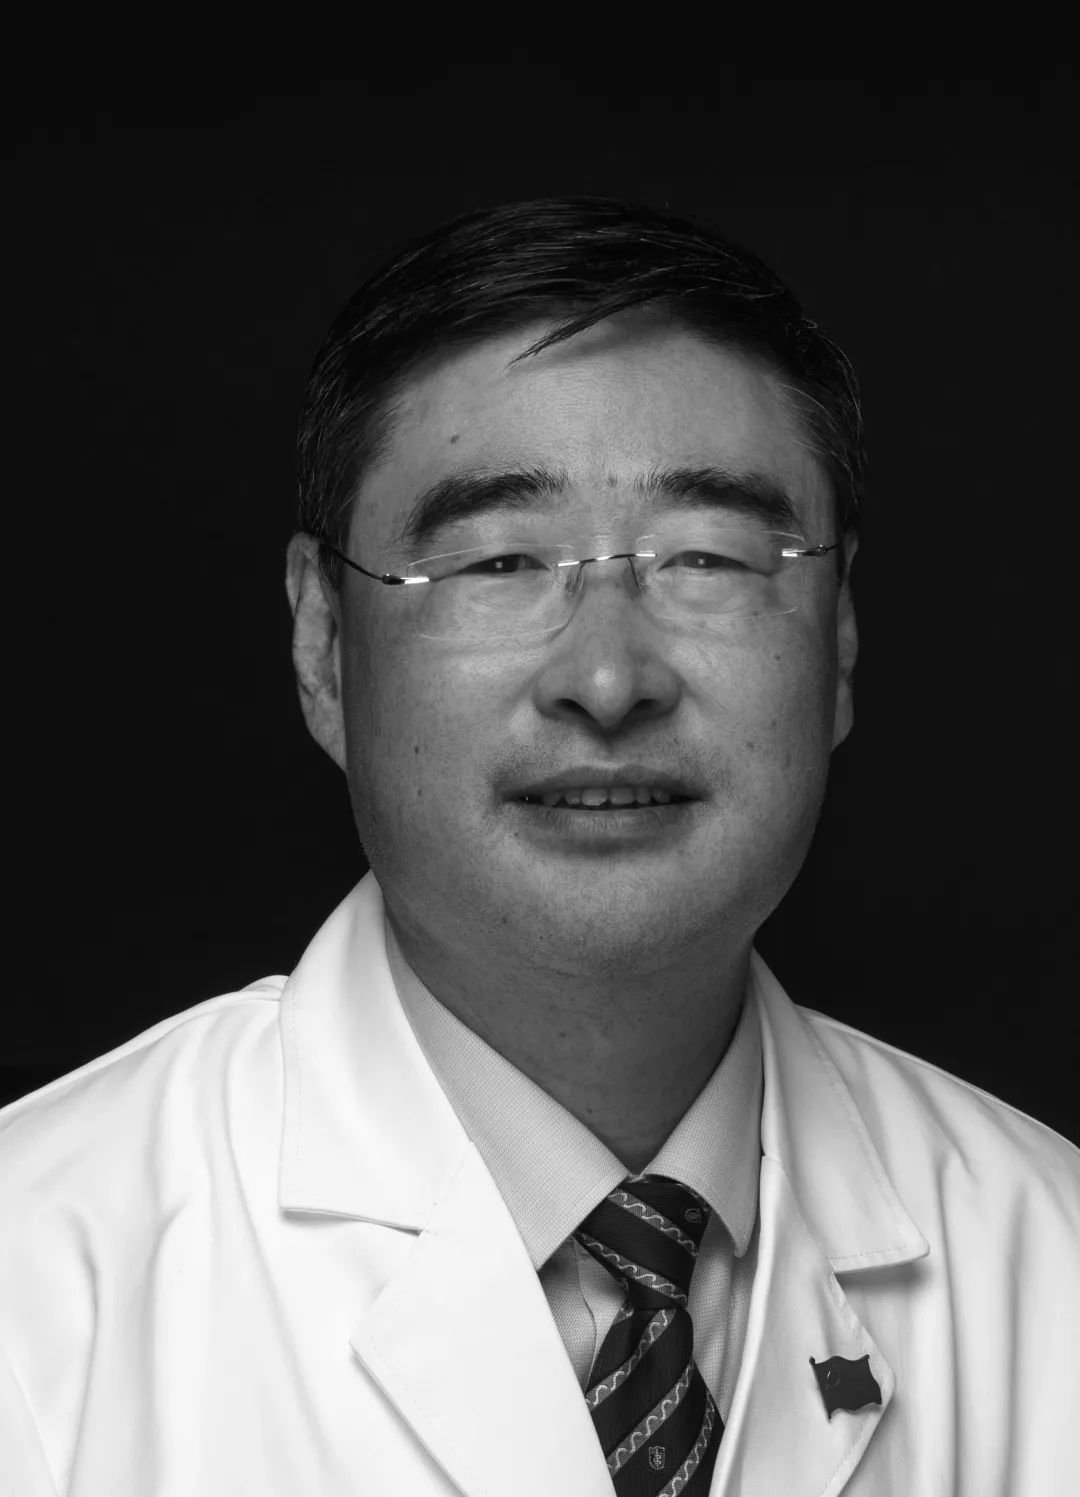 著名肝移植专家、青岛大学医疗集团副院长臧运金教授26日凌晨不幸辞世